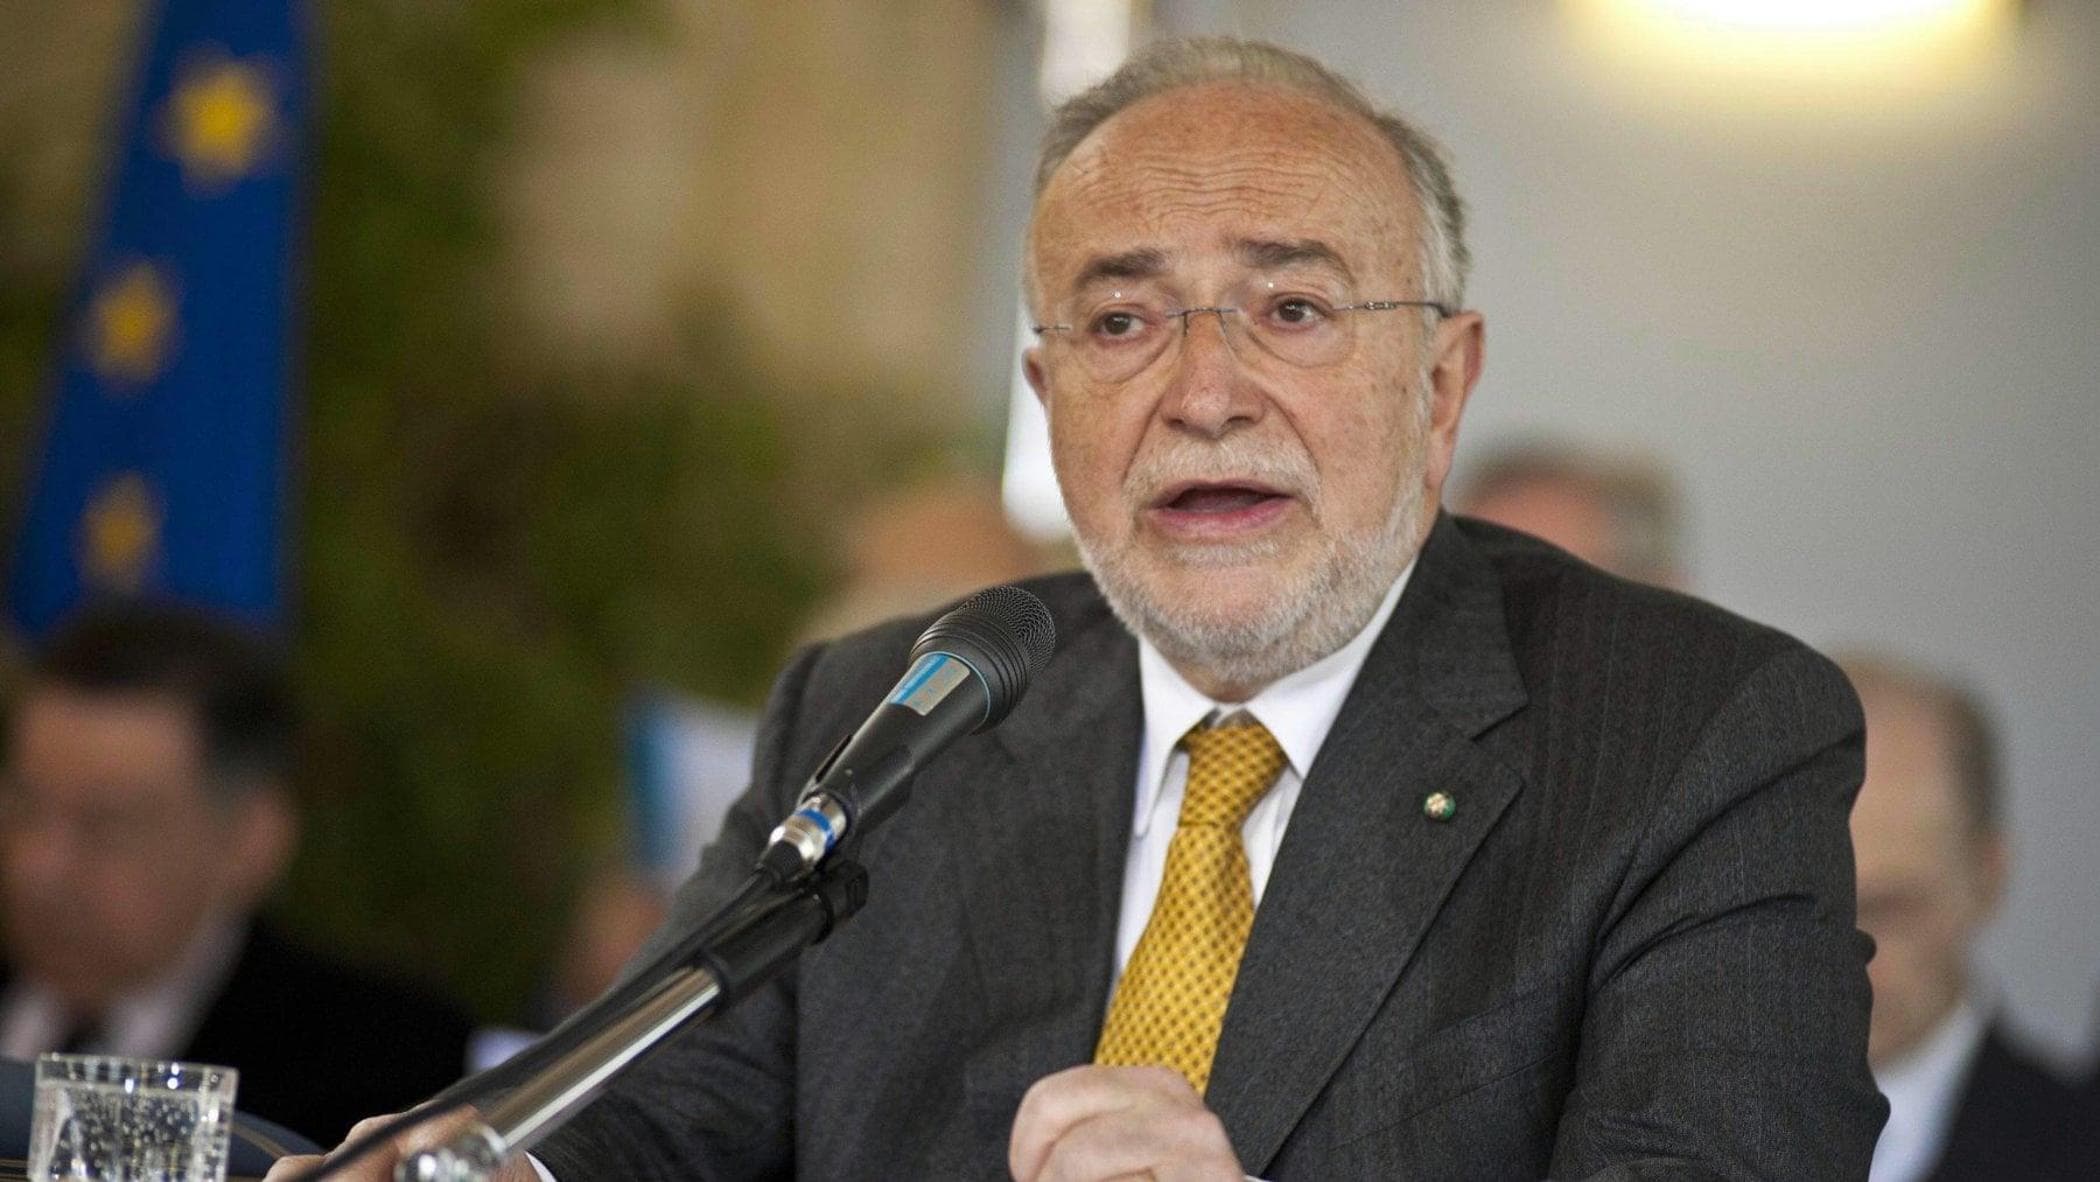 Autonomia, l'ex presidente della Corte Costituzionale De Siervo: "Sembra scritta da una persona non lucida"